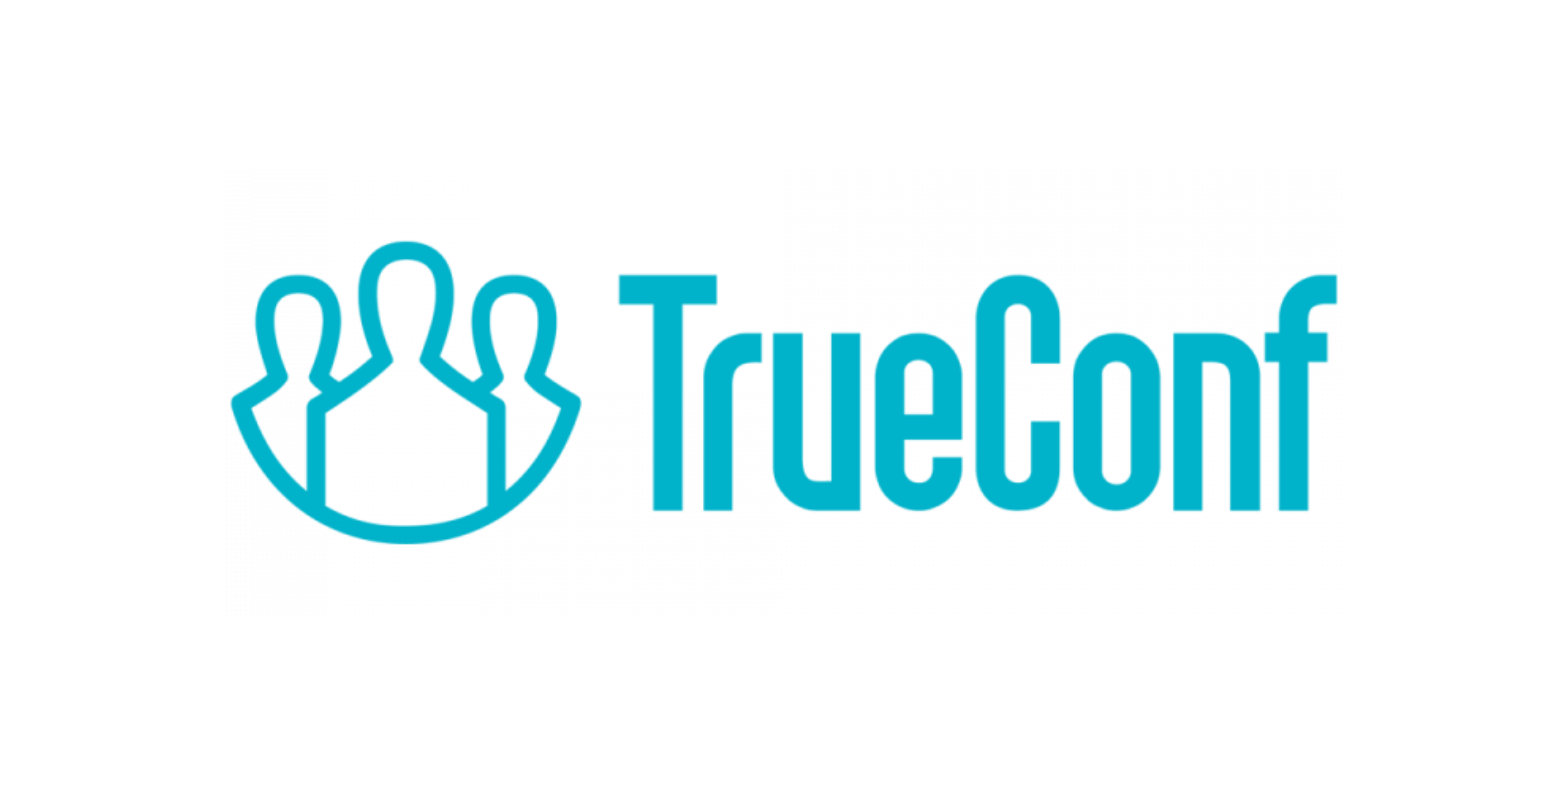 TrueConf Server Техническая поддержка на 1 год расширенная 20-49  онлайн-пользователей